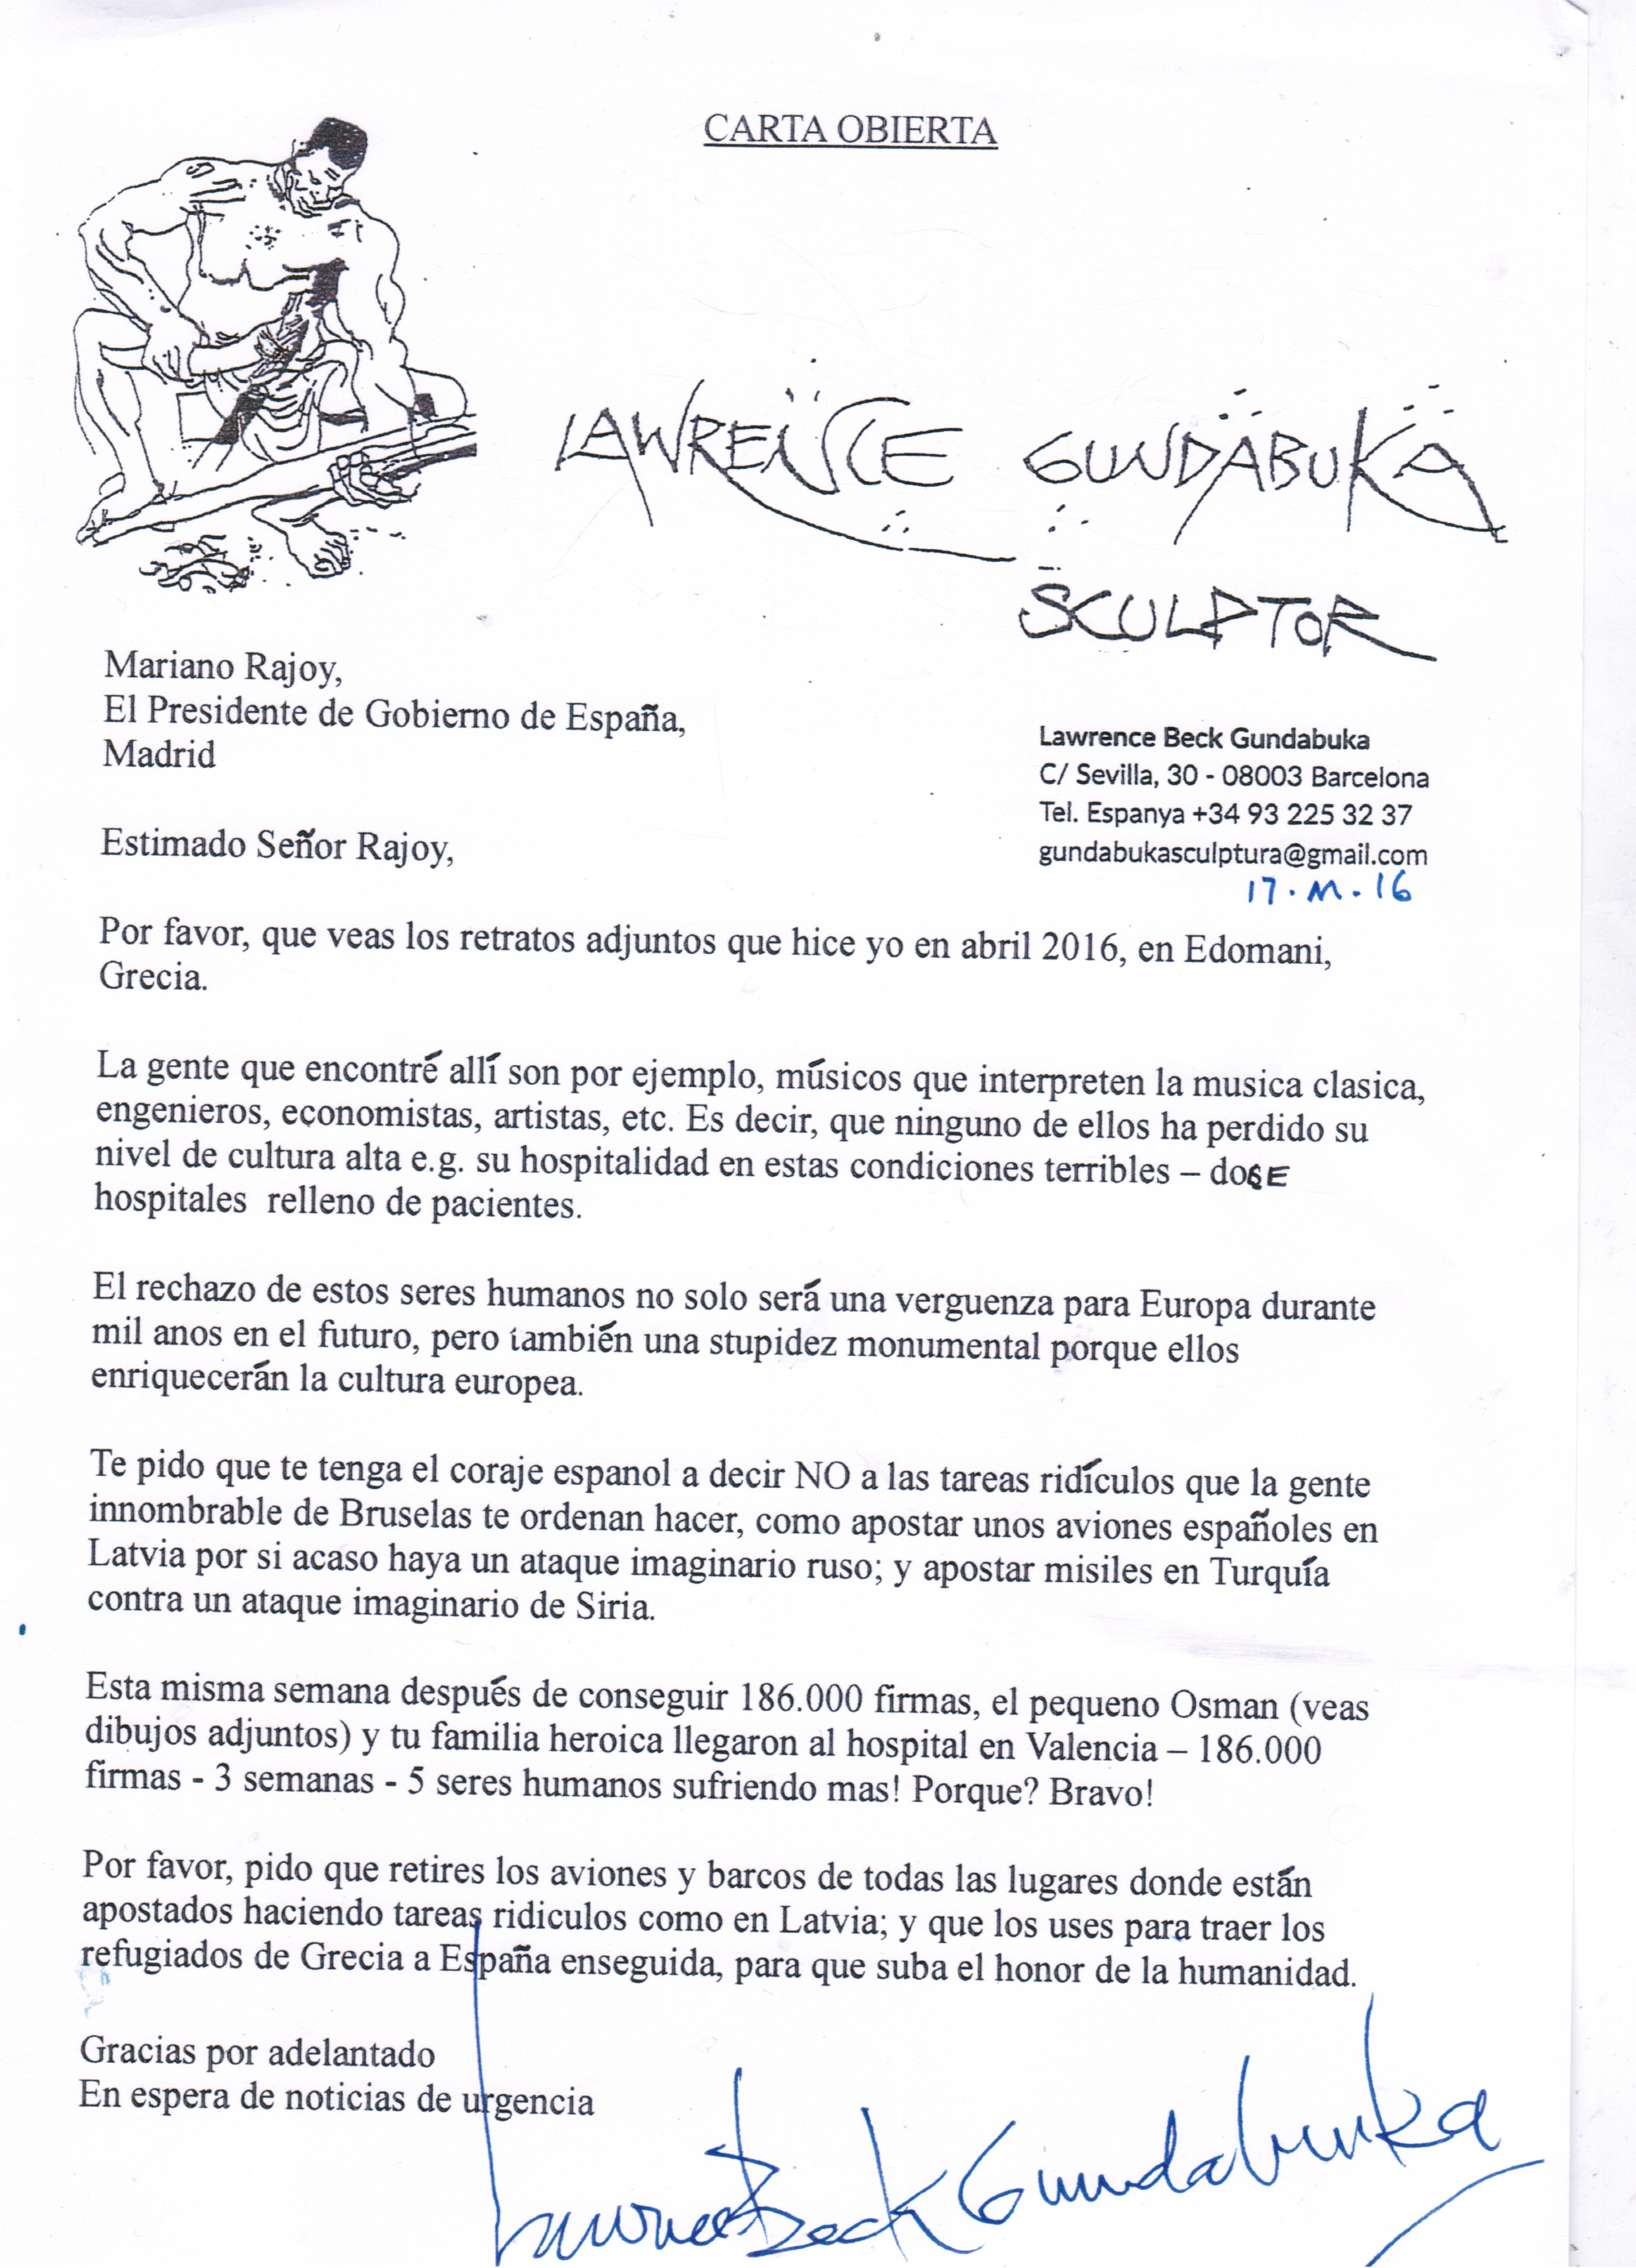 Lawrence Gundabuka carta abierta Mariano Rajoy